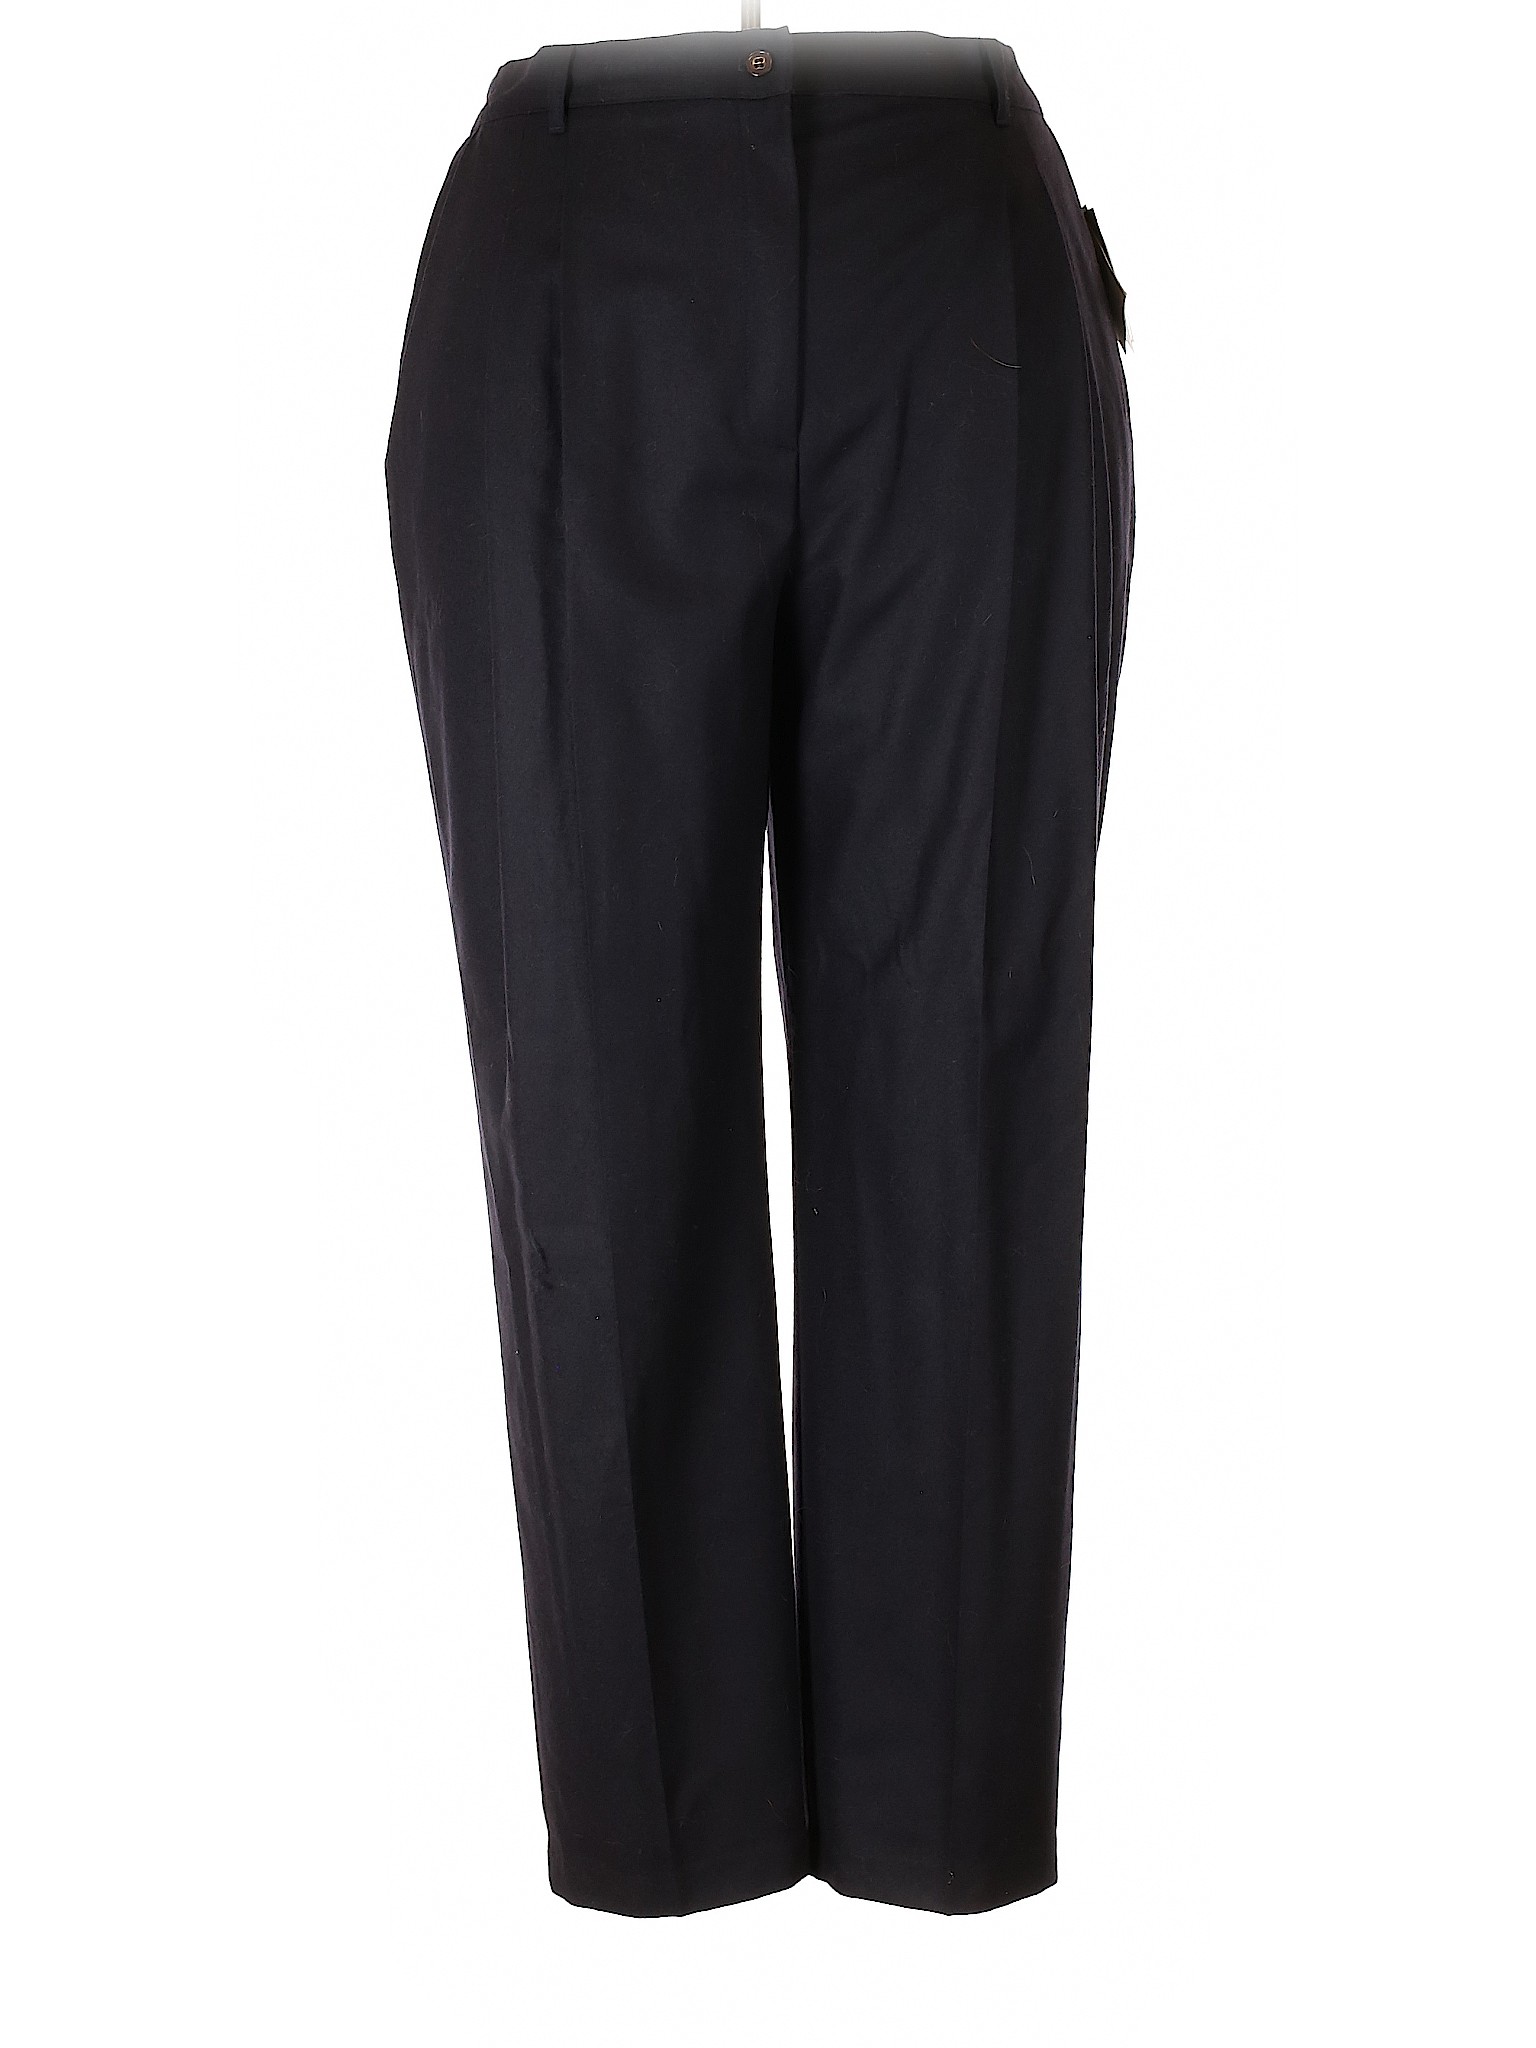 NWT Sag Harbor Women Black Wool Pants 22 Plus | eBay